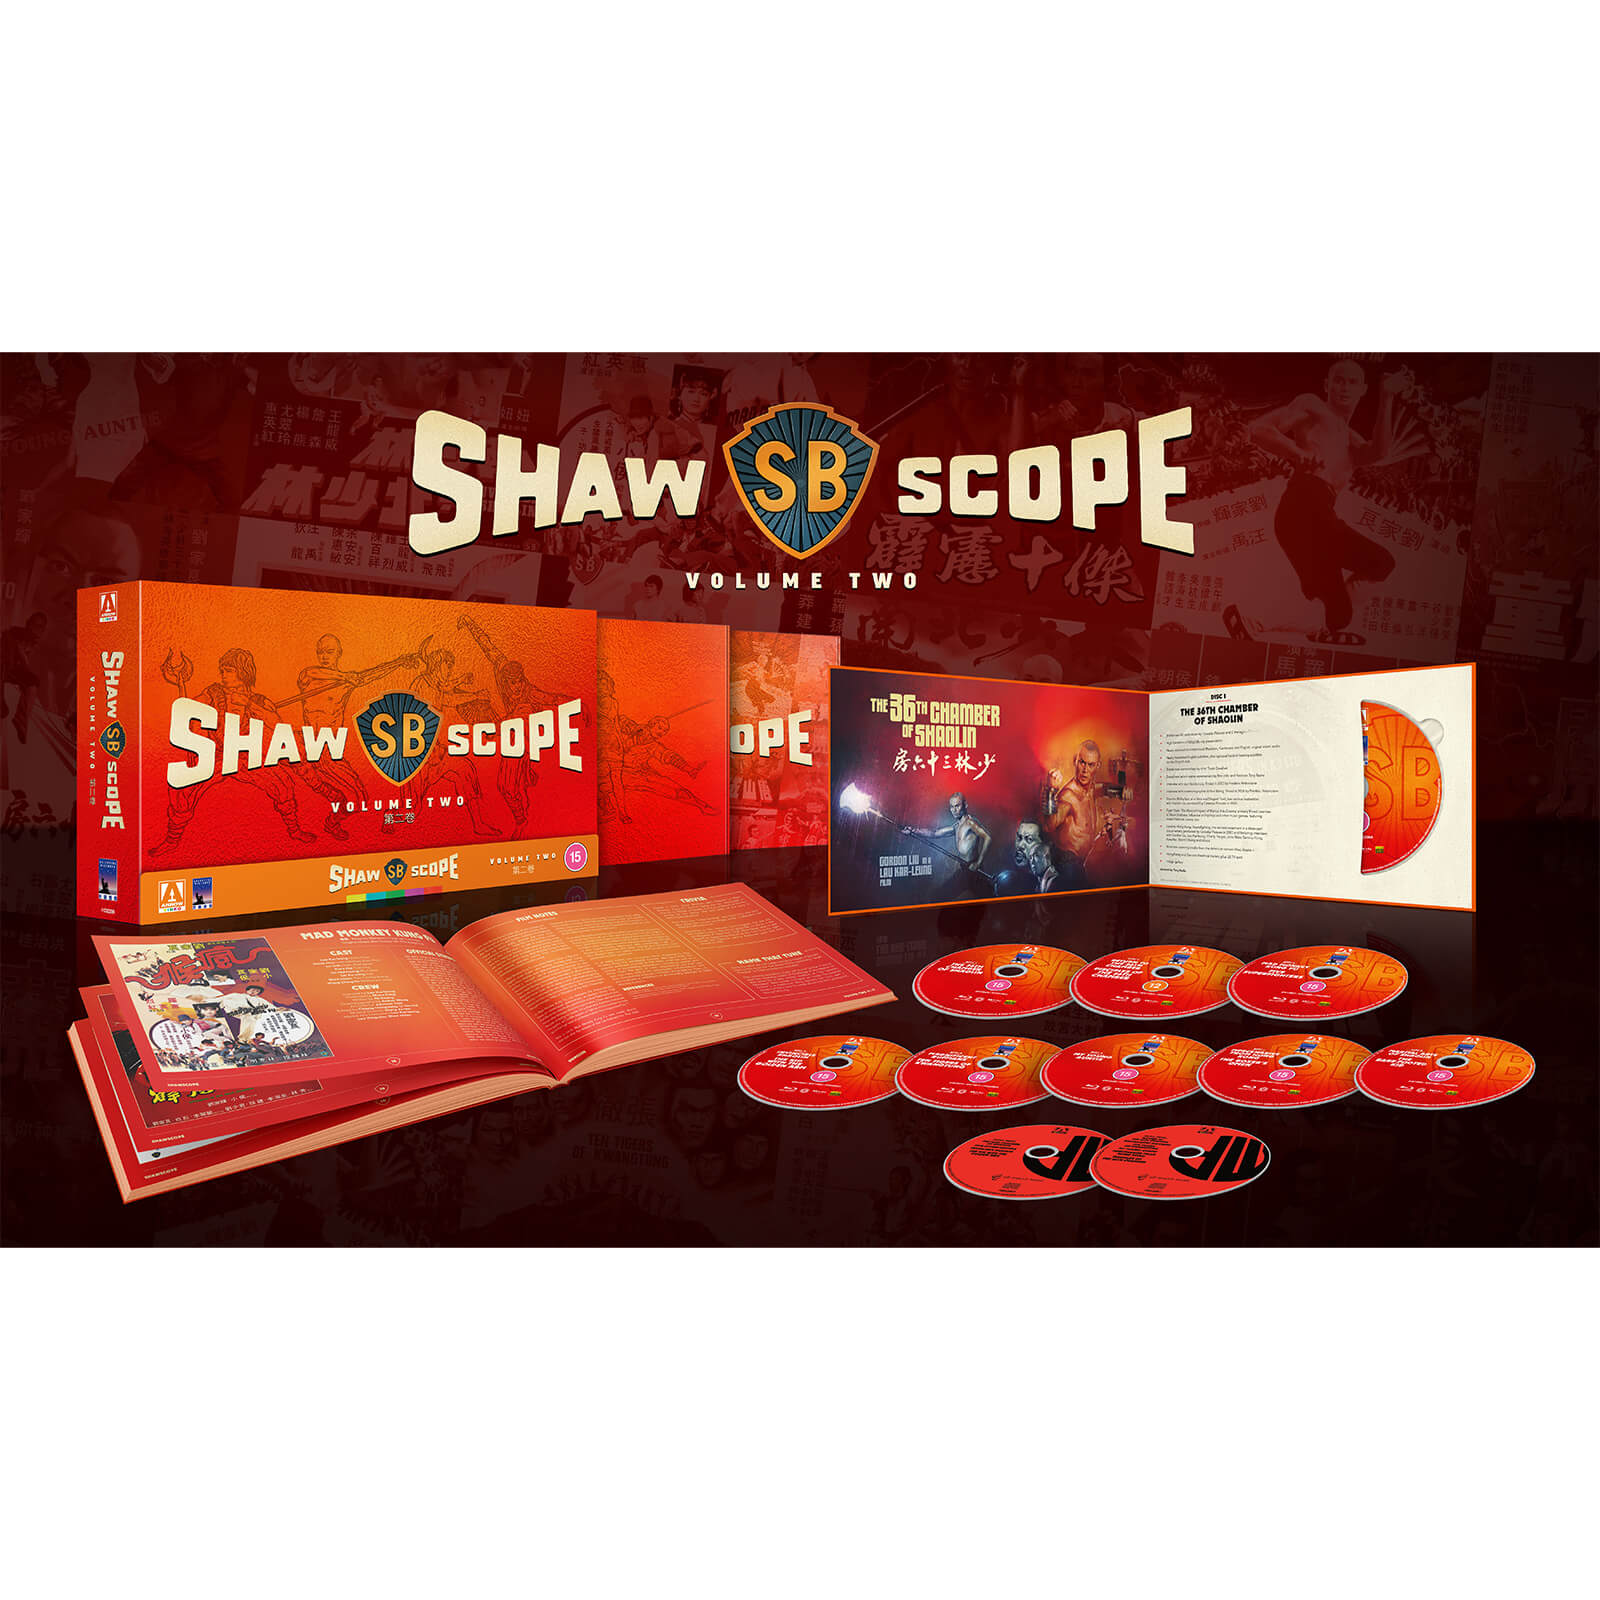 Shawscope Vol 2 Limited Edition von Arrow Video